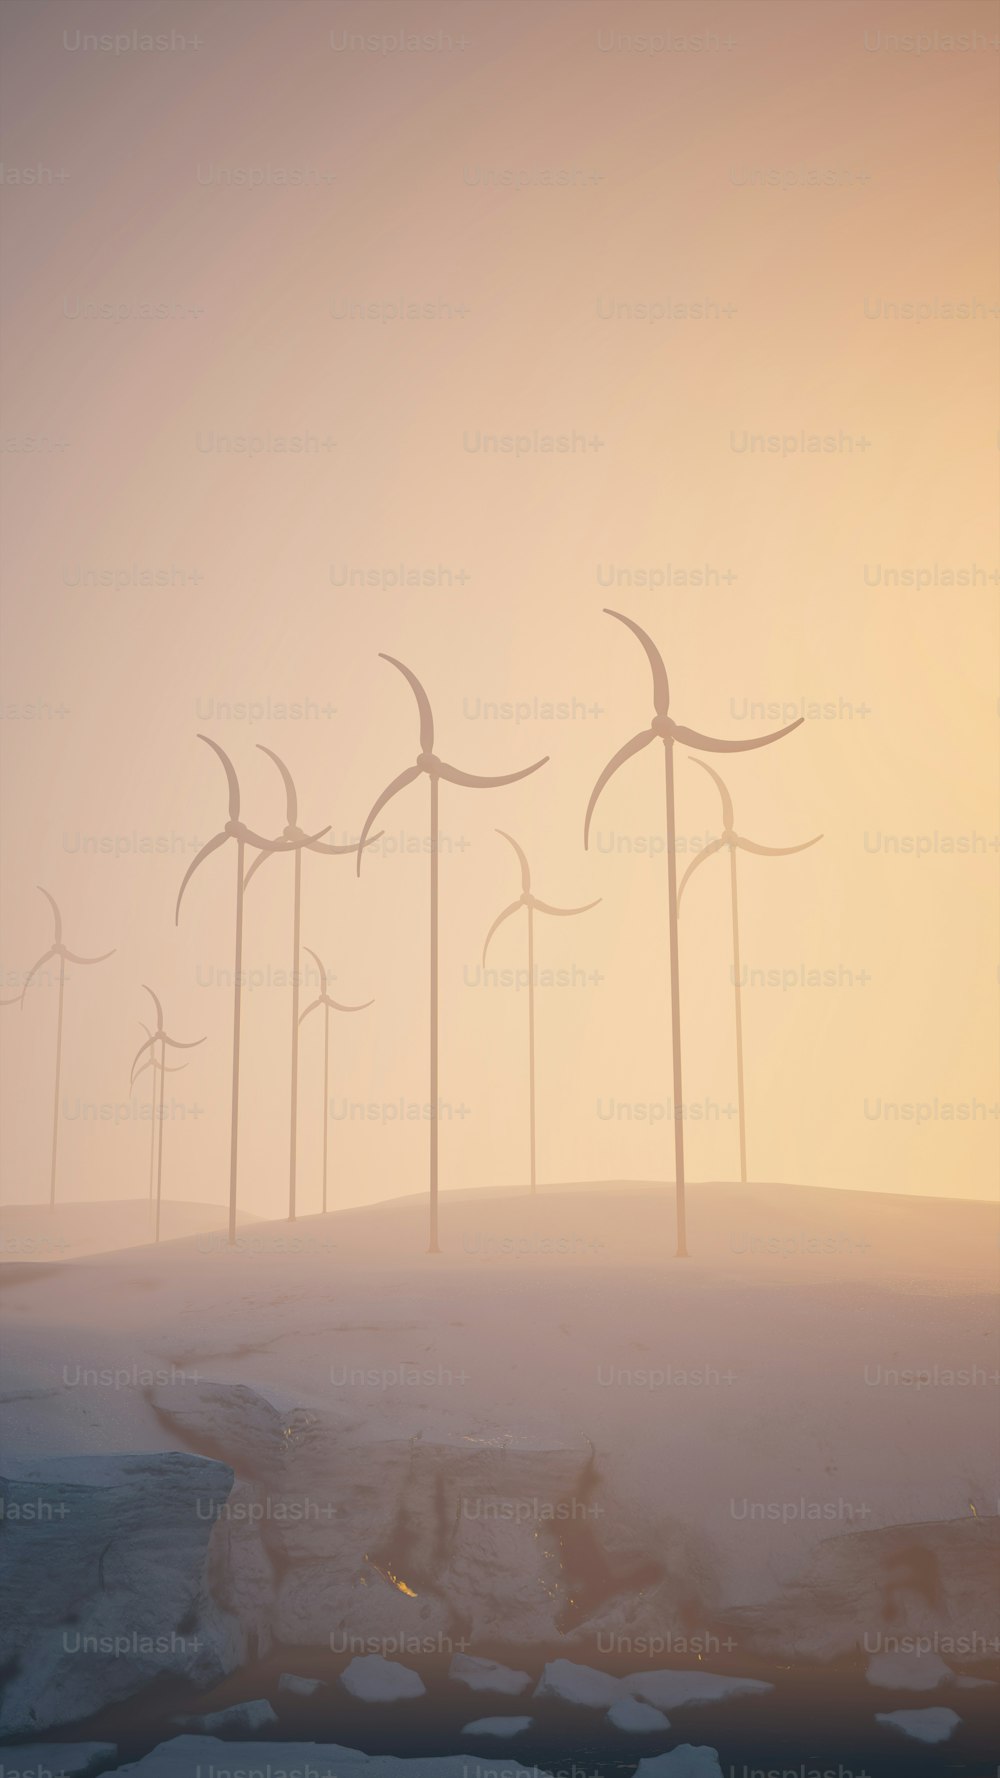 Un groupe d’éoliennes sur une colline enneigée